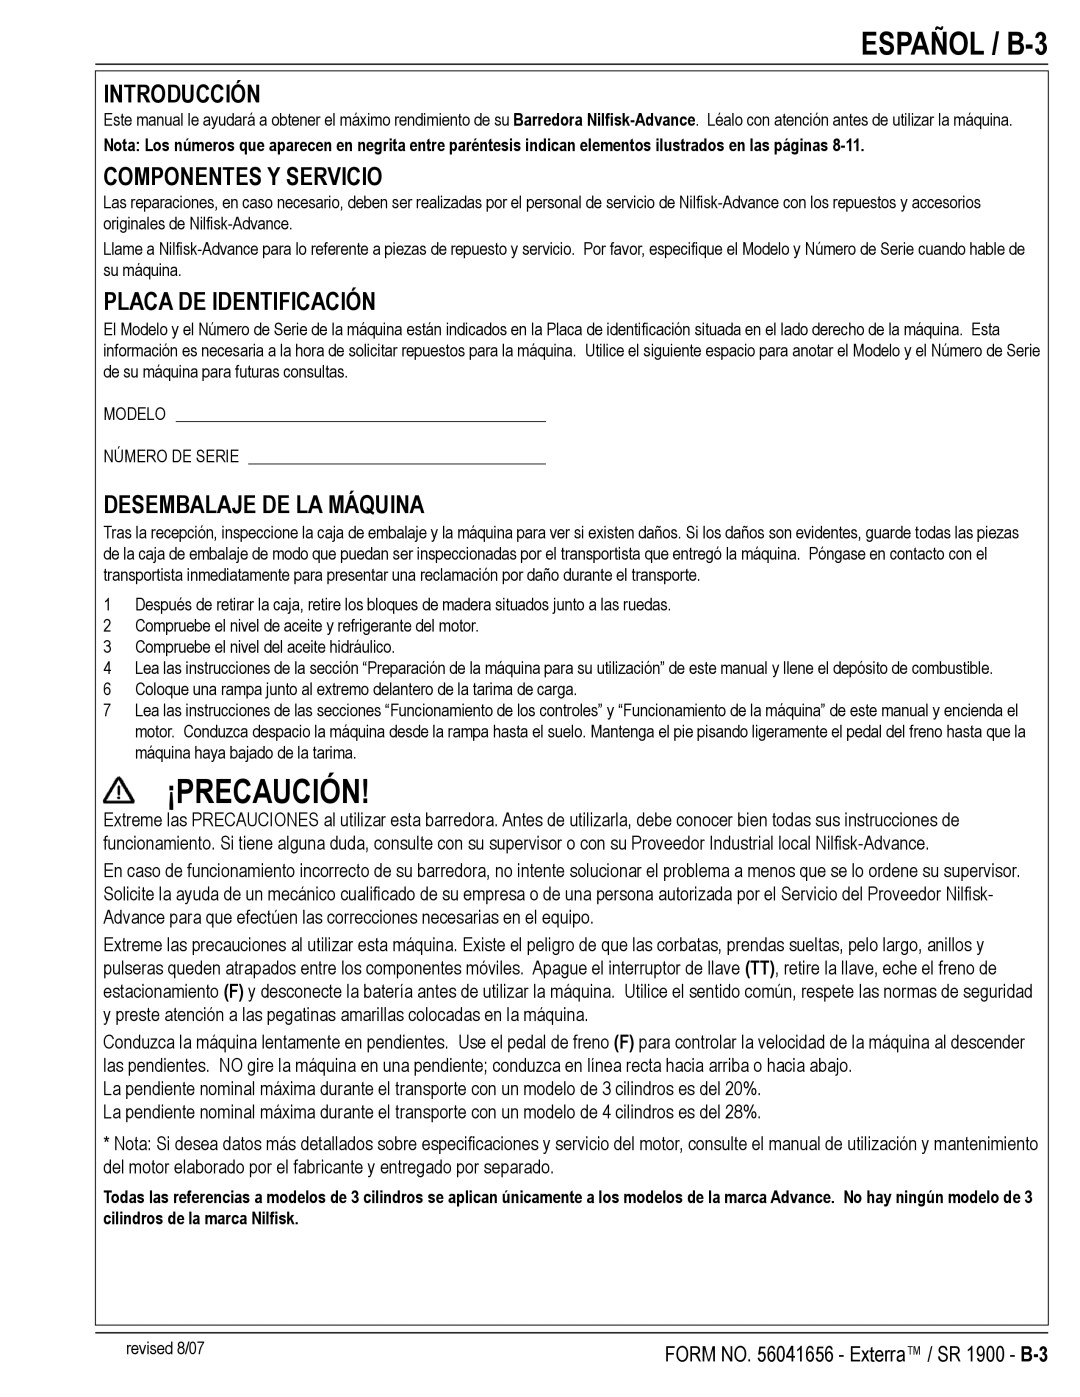 Nilfisk-ALTO SR 1900 manual Español / B-3, Introducción, Componentes Y Servicio, Placa DE Identificación 